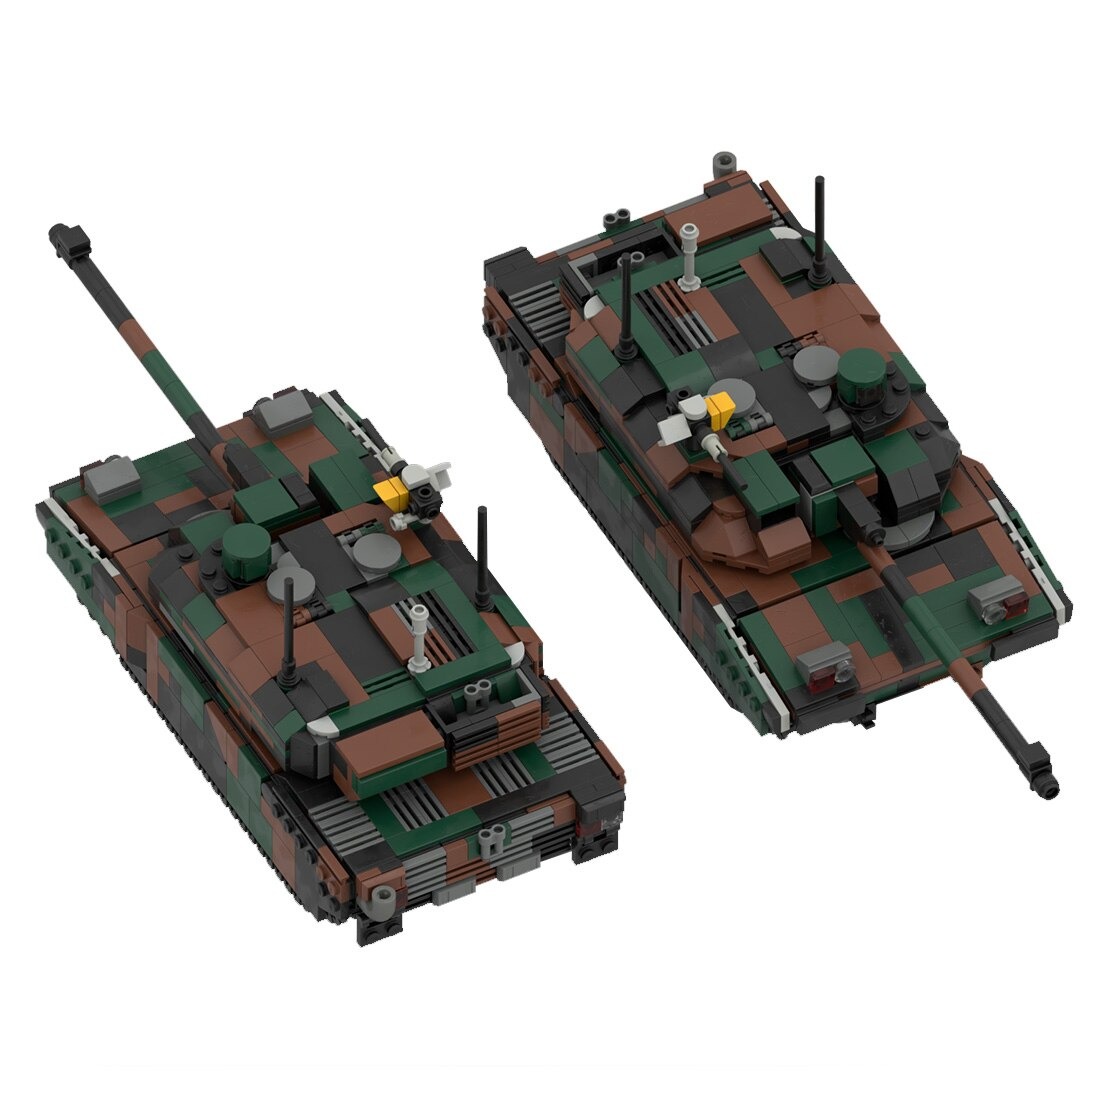 moc 34858 leclerc main battle tank model main 4 - SUPER18K Block